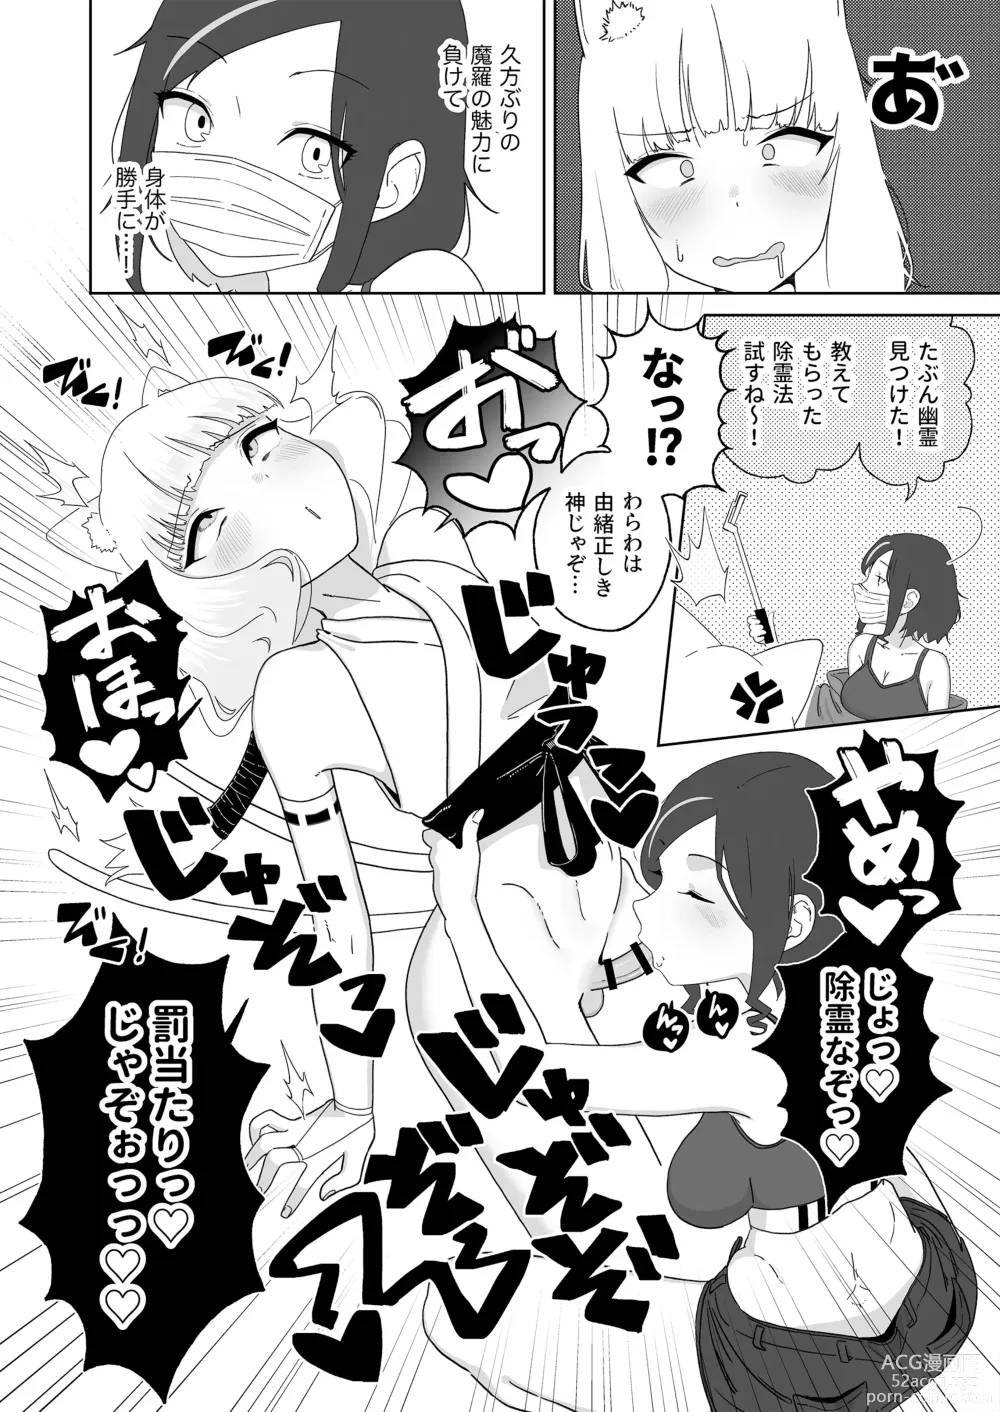 Page 7 of doujinshi Hyakuman Kaime no Acme de Kekkon shita Neko